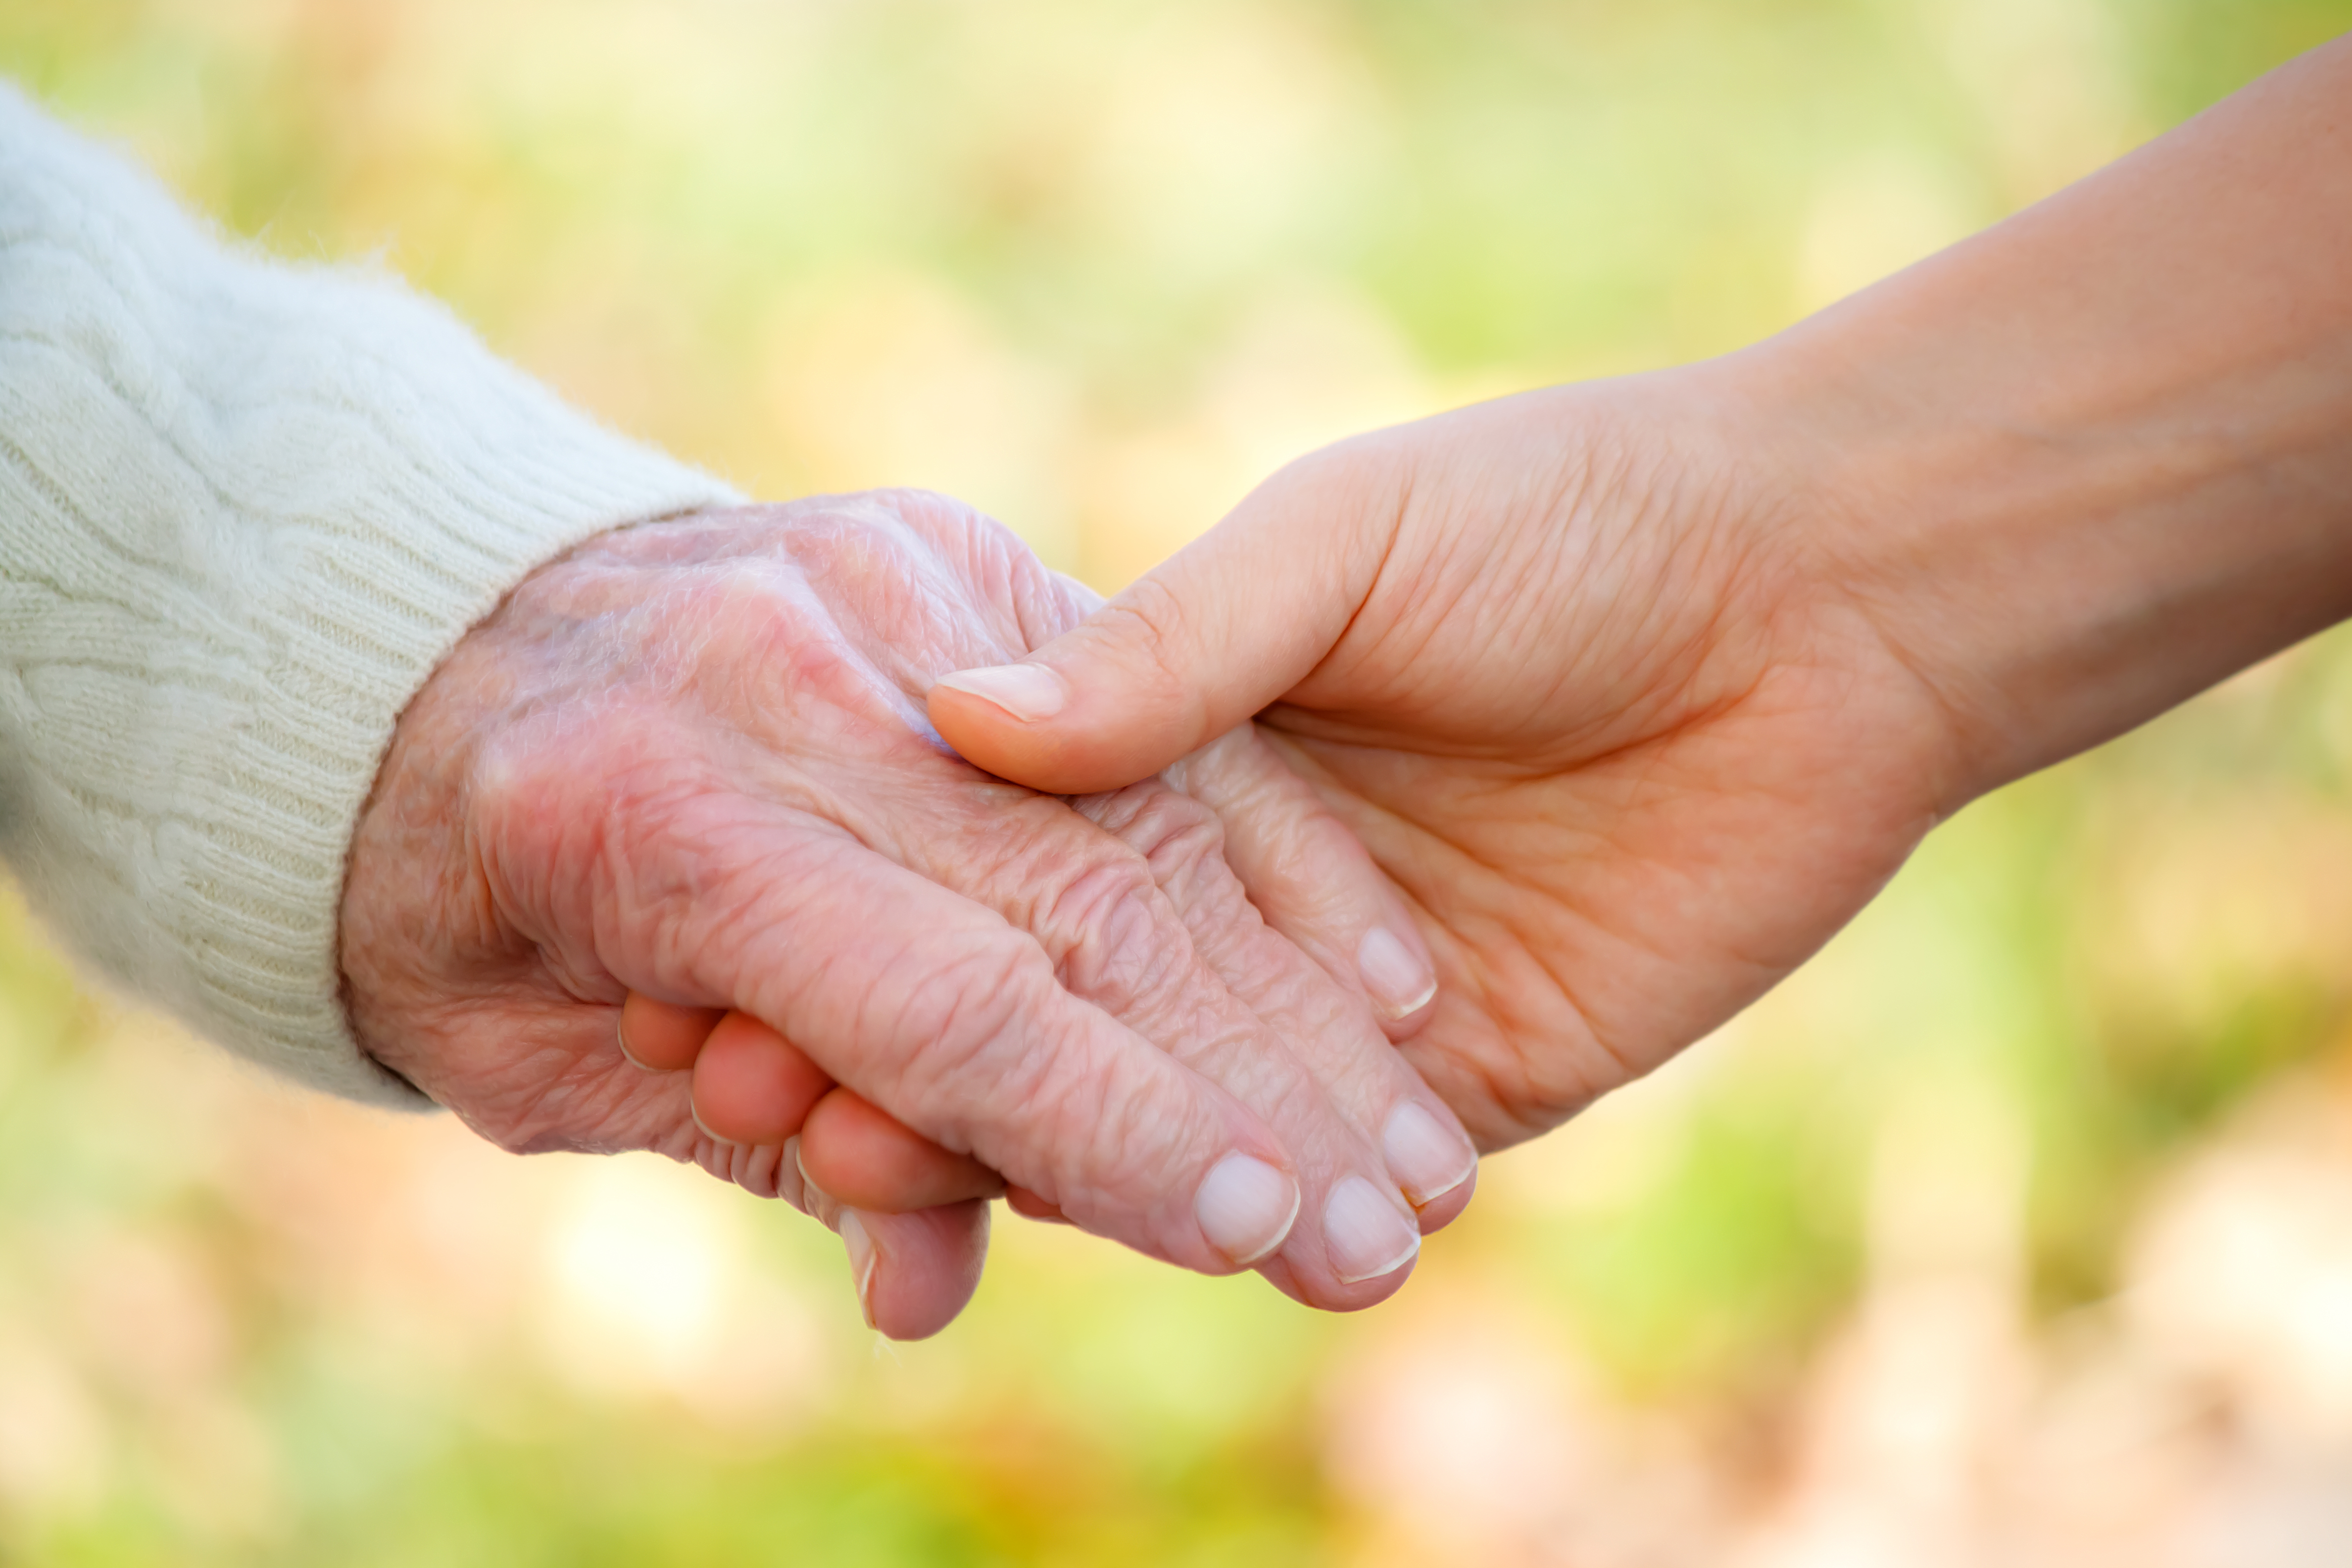 Anciano y joven cogidos de la mano en el exterior | Fuente: Shutterstock